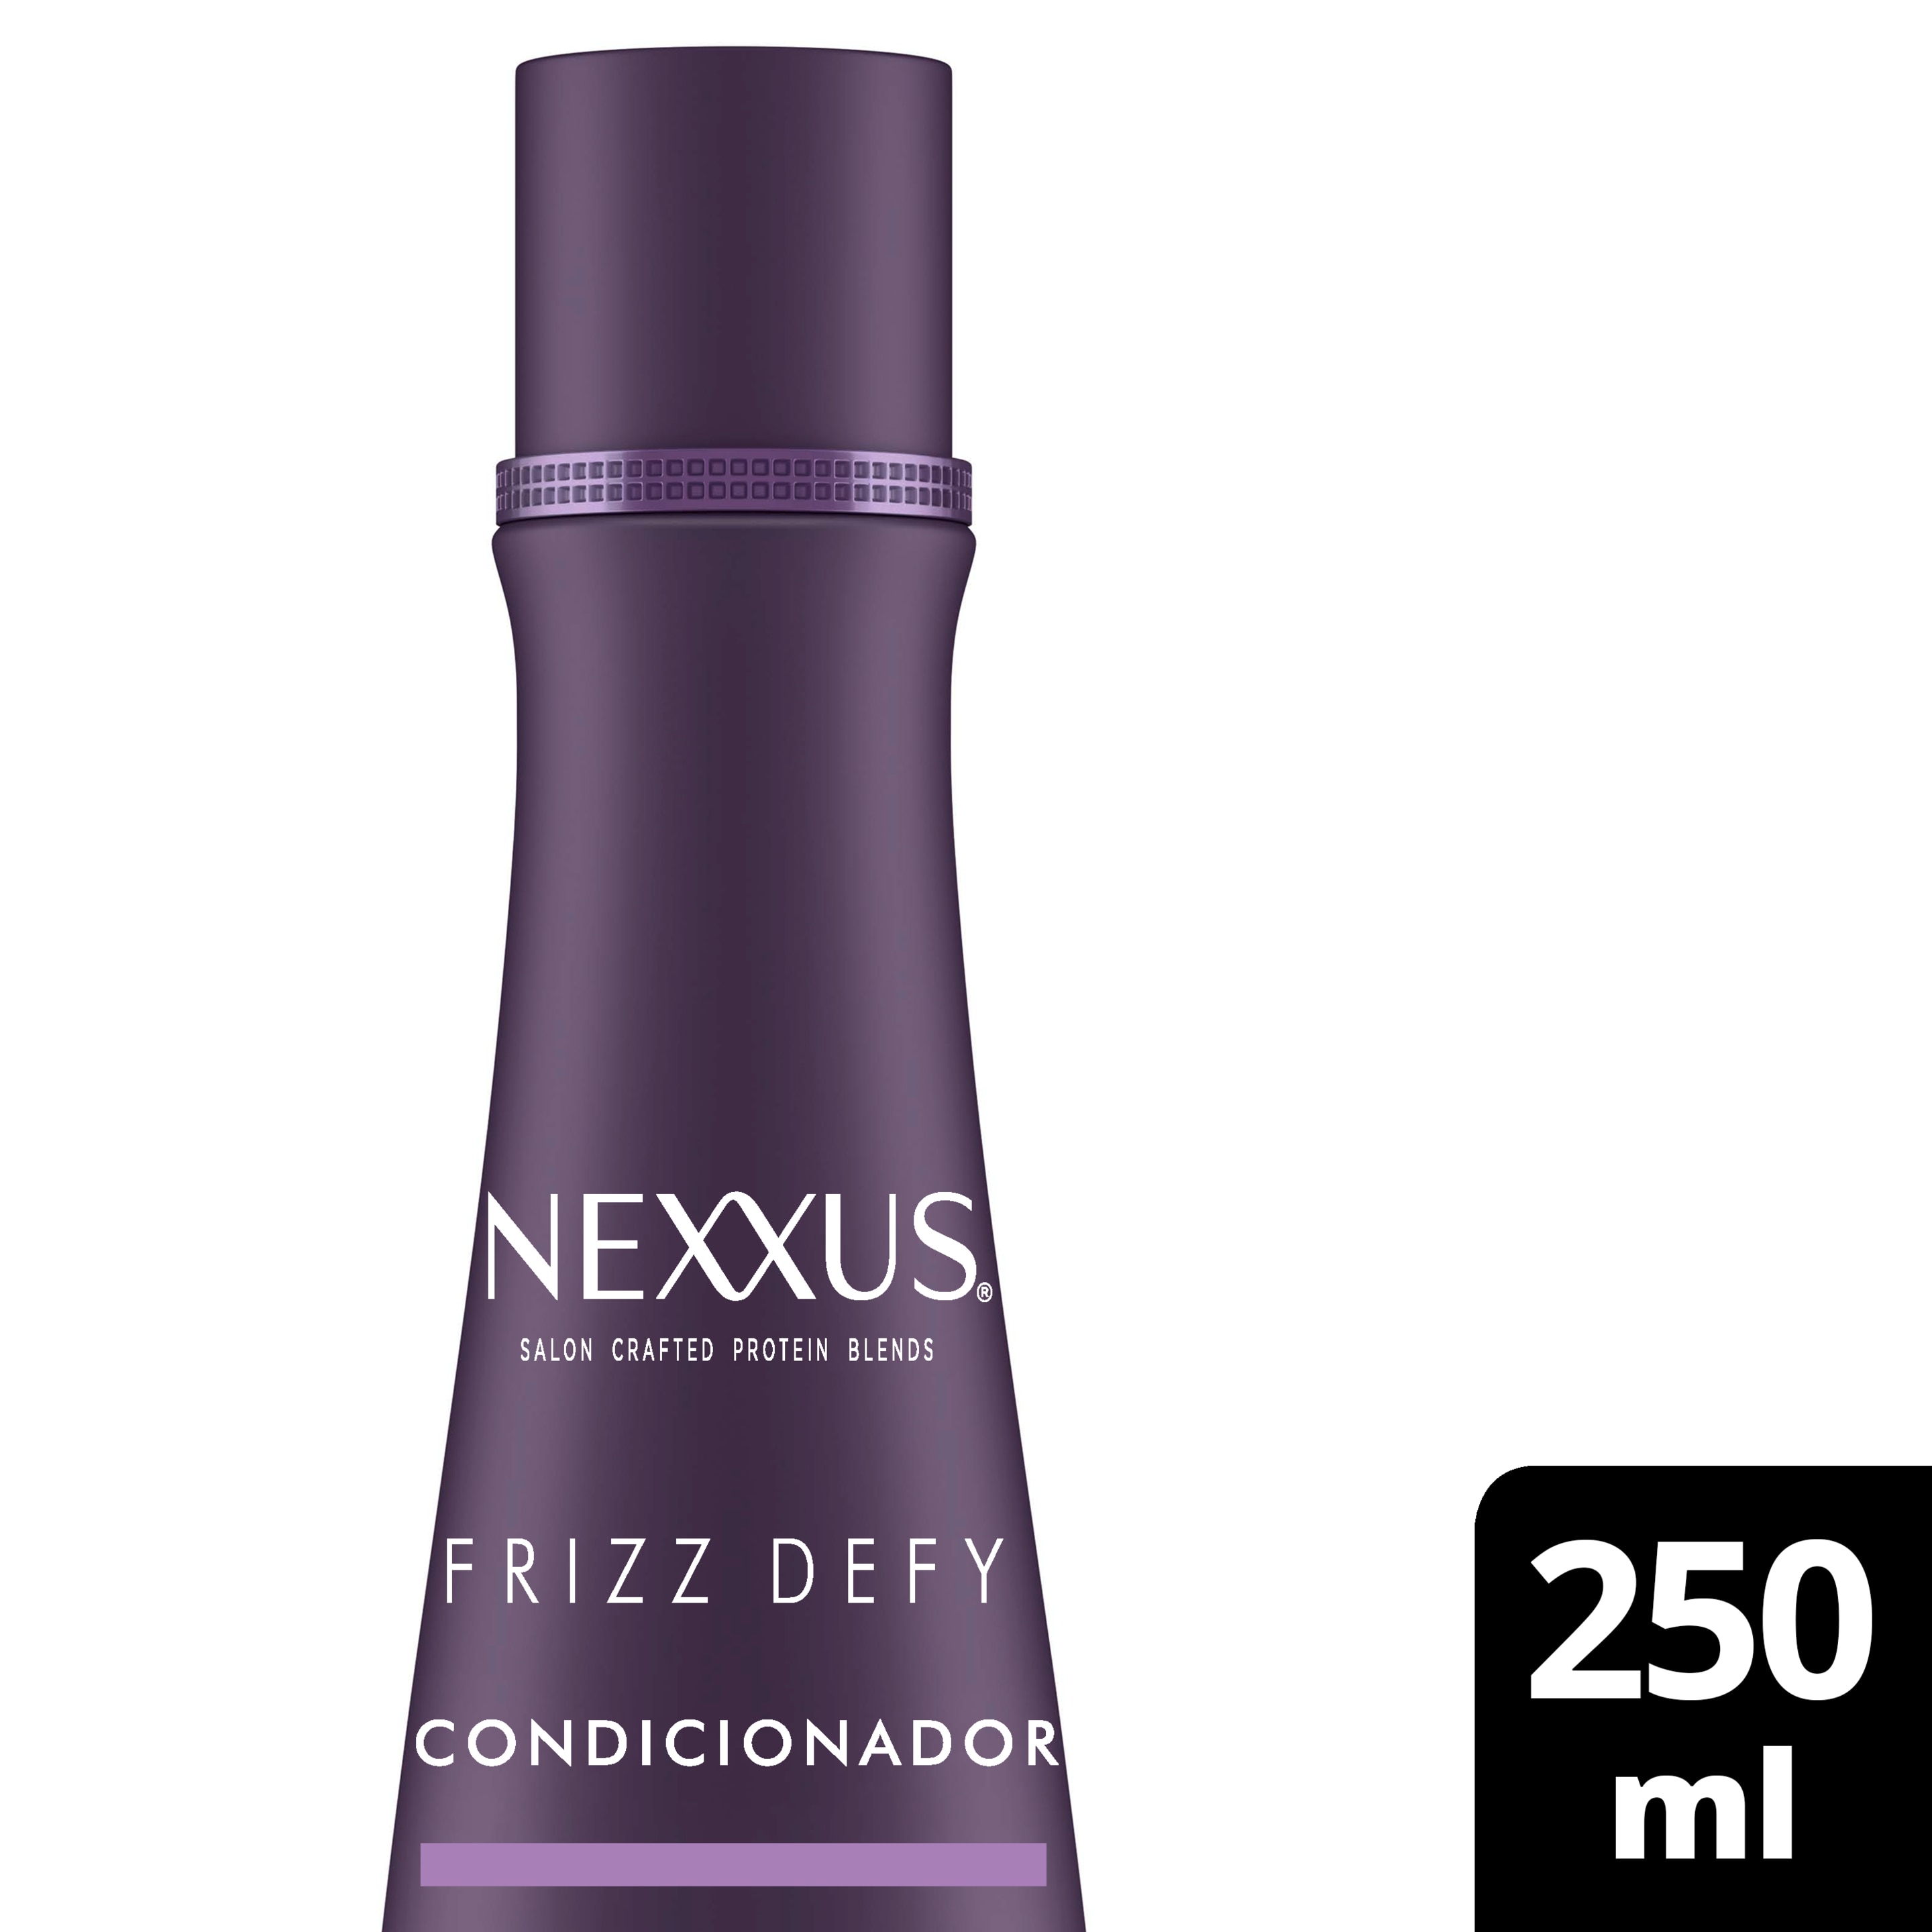 Condicionador Nexxus Frizz Defy  250ml